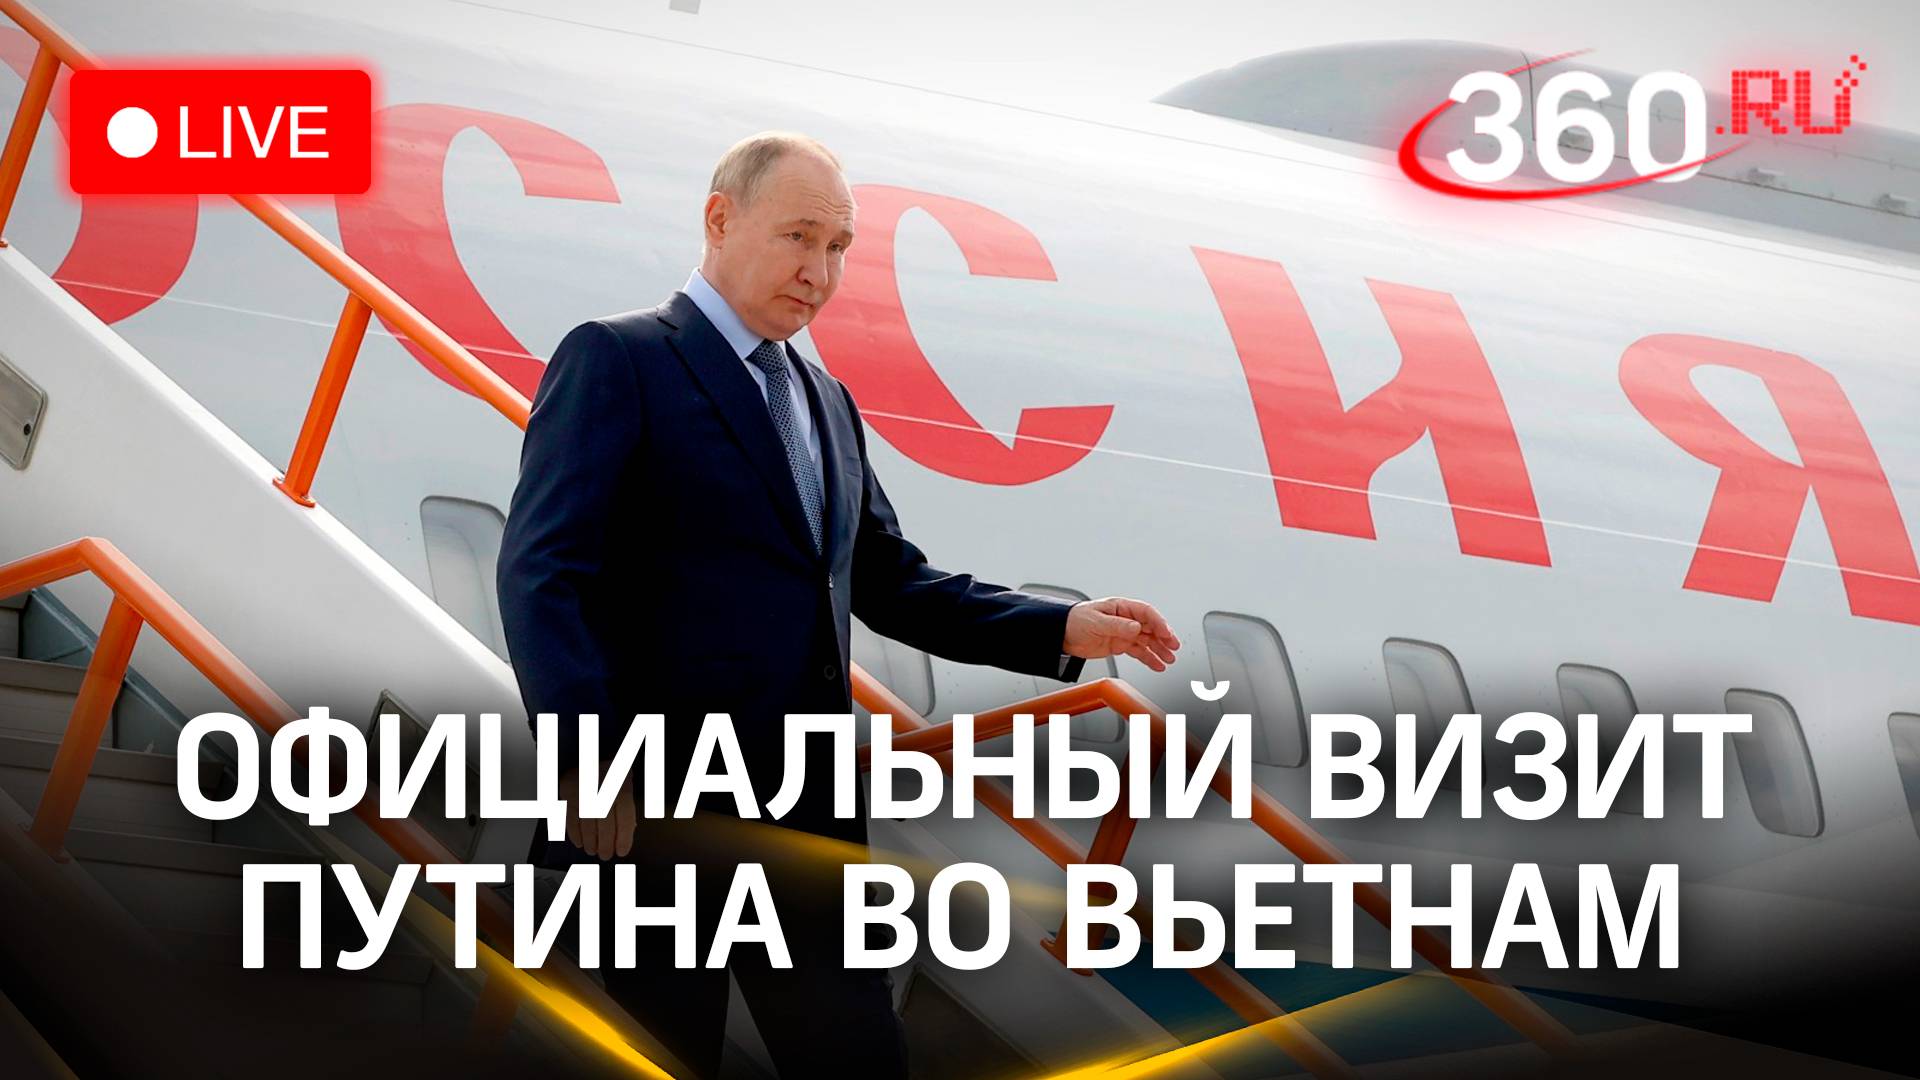 Официальный визит Путина во Вьетнам